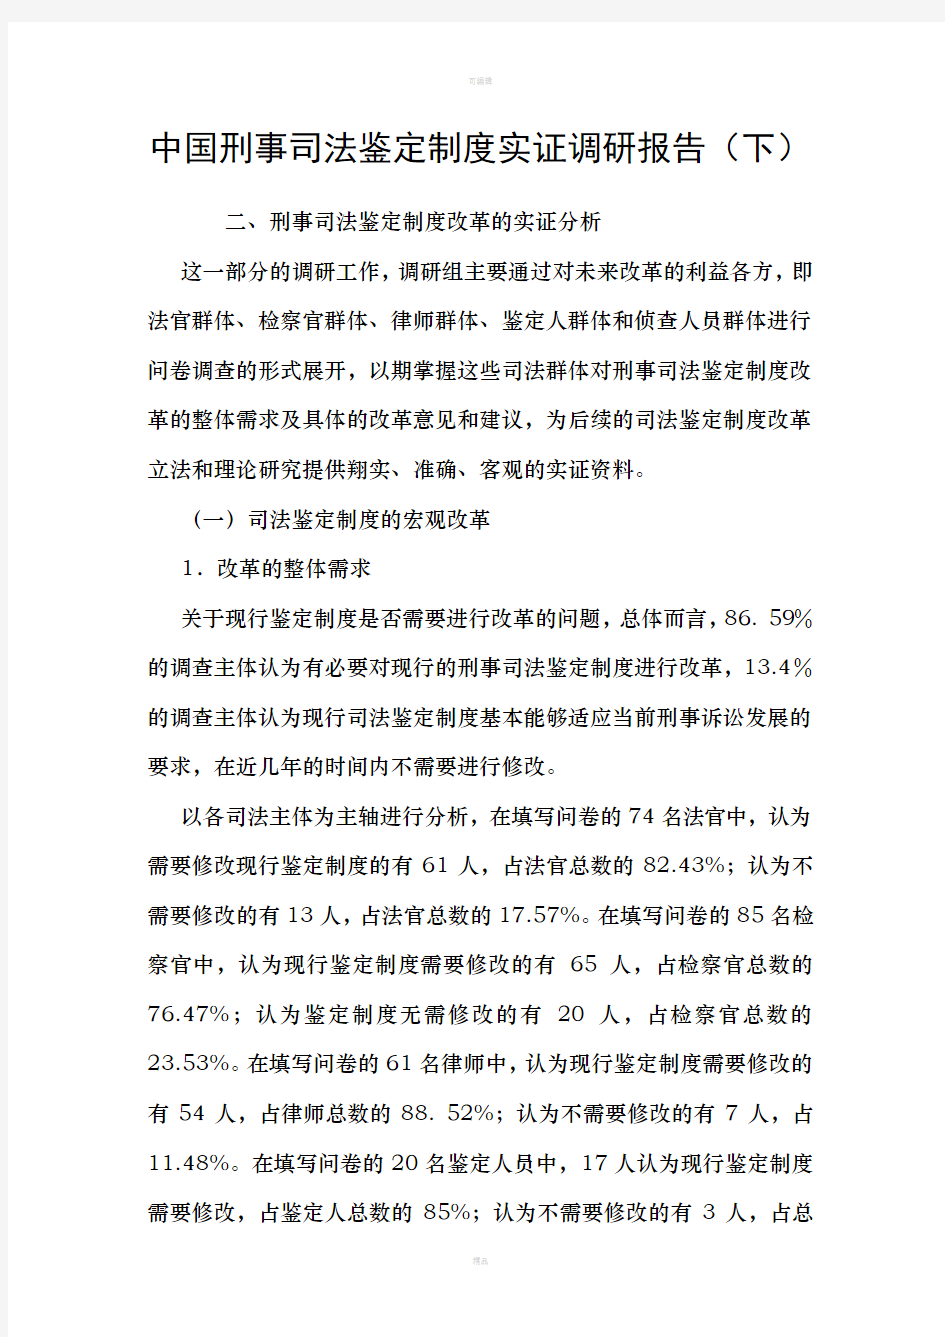 中国刑事司法鉴定制度实证调研报告下